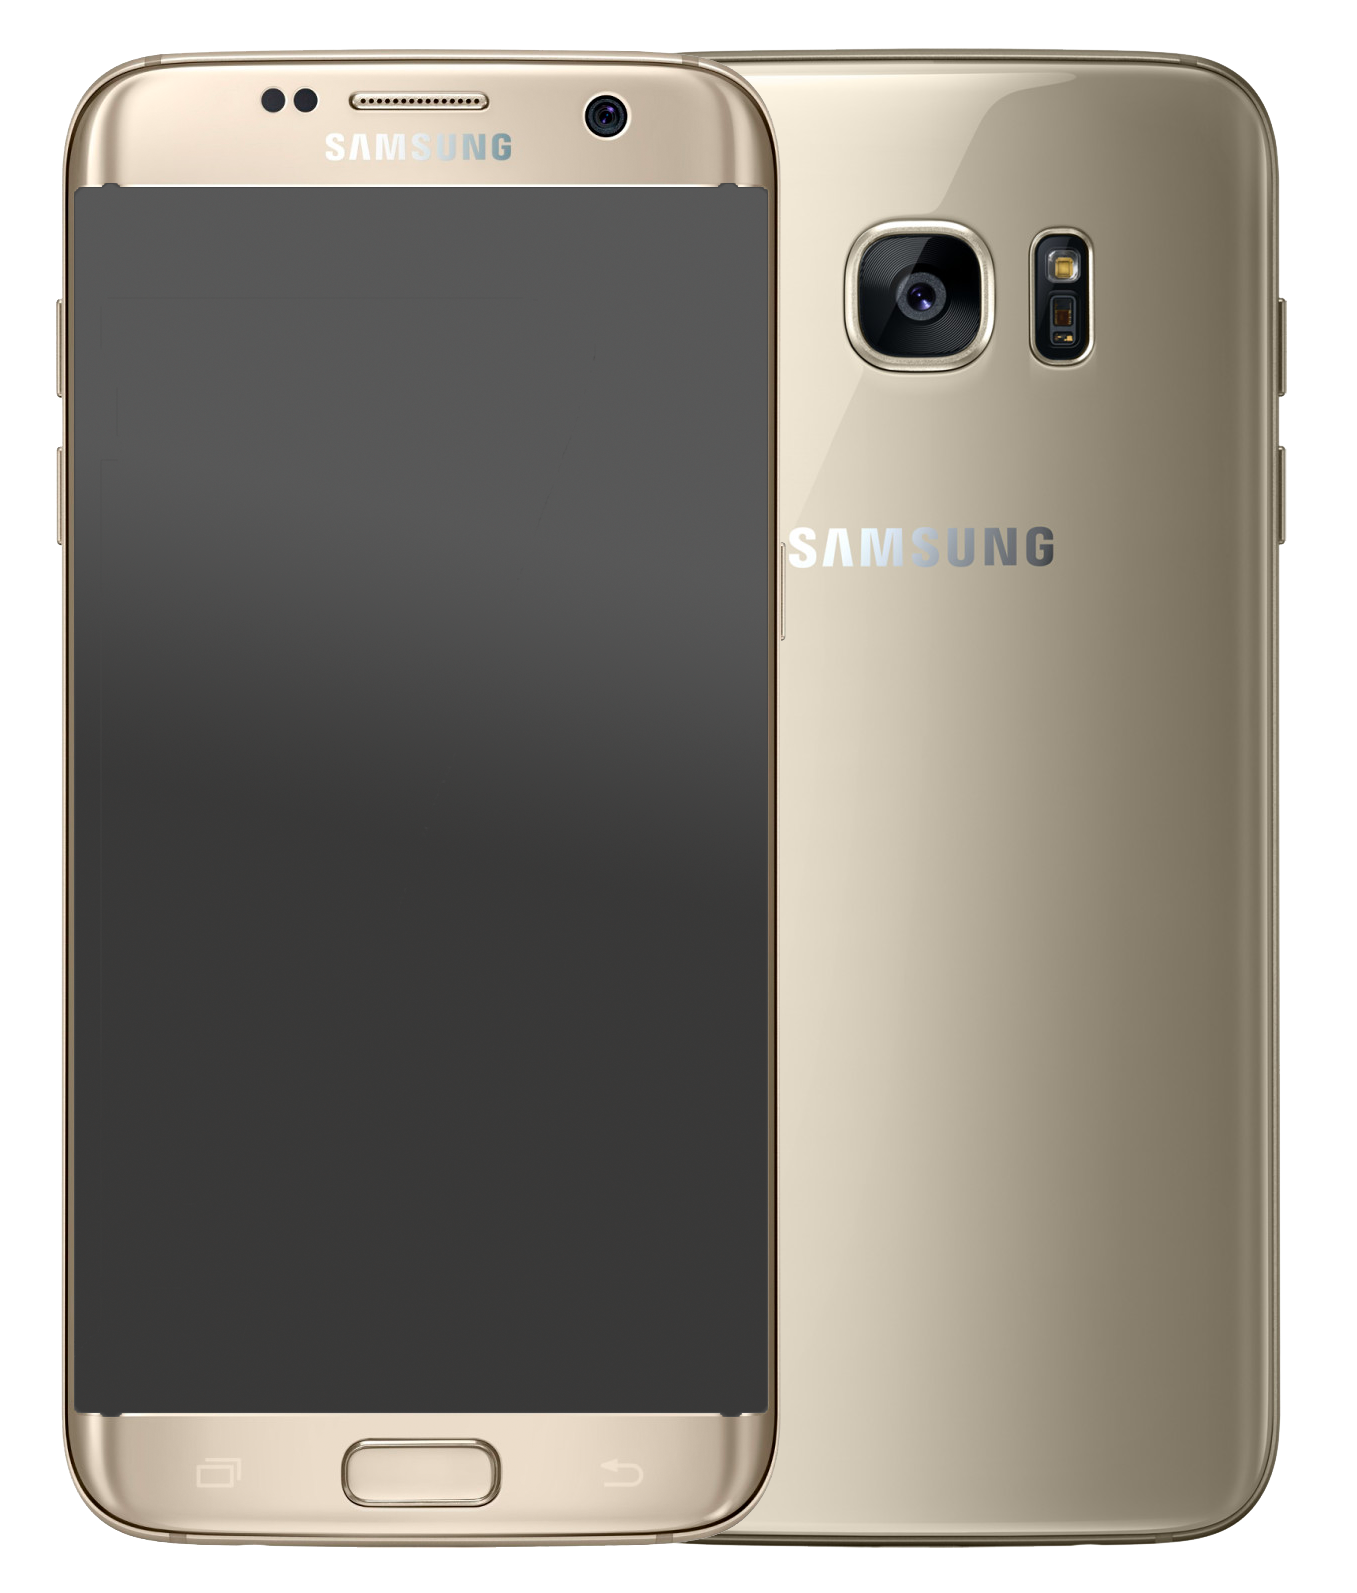 Samsung Galaxy S7 Dual-SIM gold - Ohne Vertrag